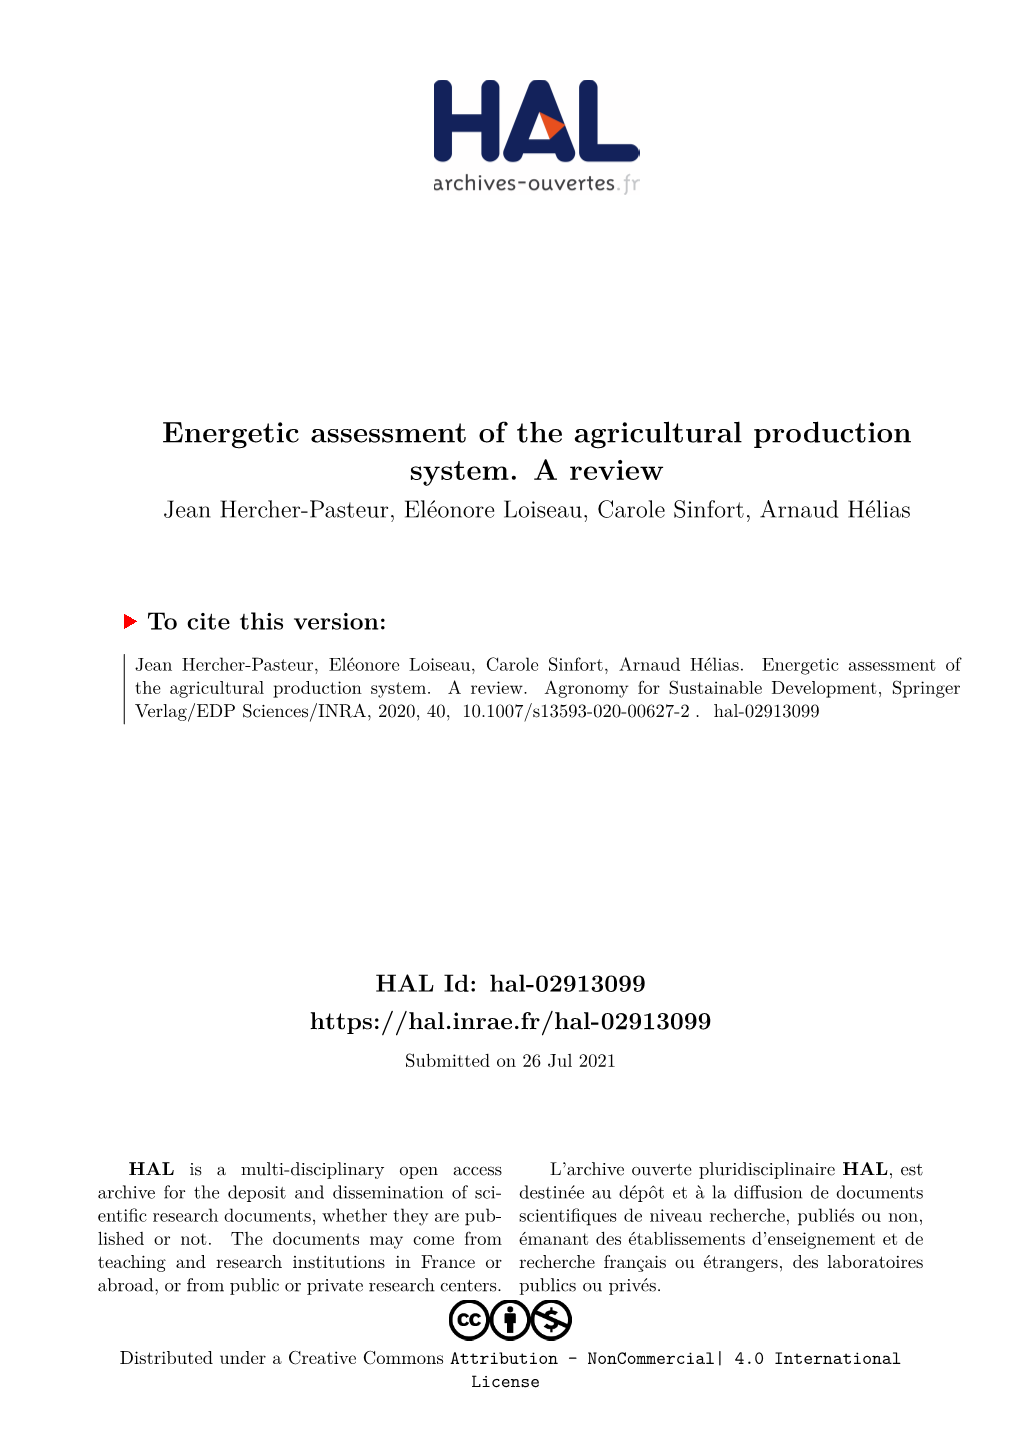 Energetic Assessment of the Agricultural Production System. a Review Jean Hercher-Pasteur, Eléonore Loiseau, Carole Sinfort, Arnaud Hélias